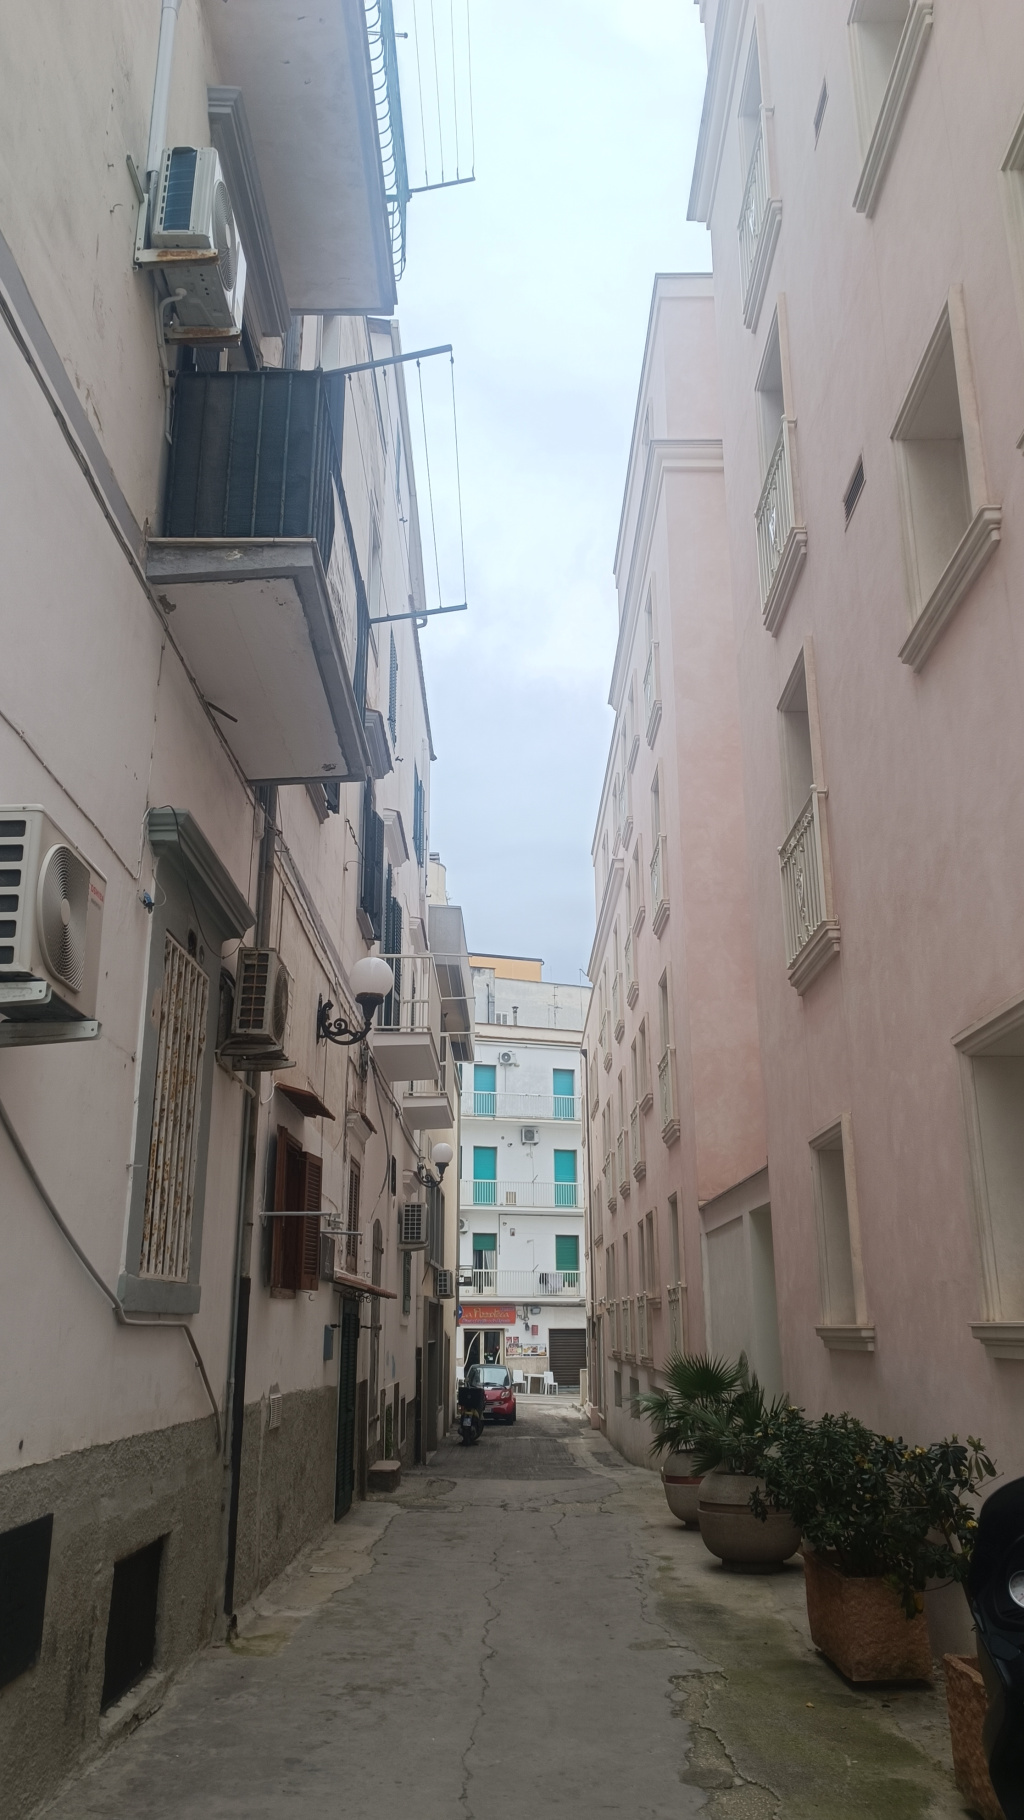 GALERIE FOTO: Vieste, orașul italian pitoresc cu străduțe ca-n filme, în care picioarele te poartă singure